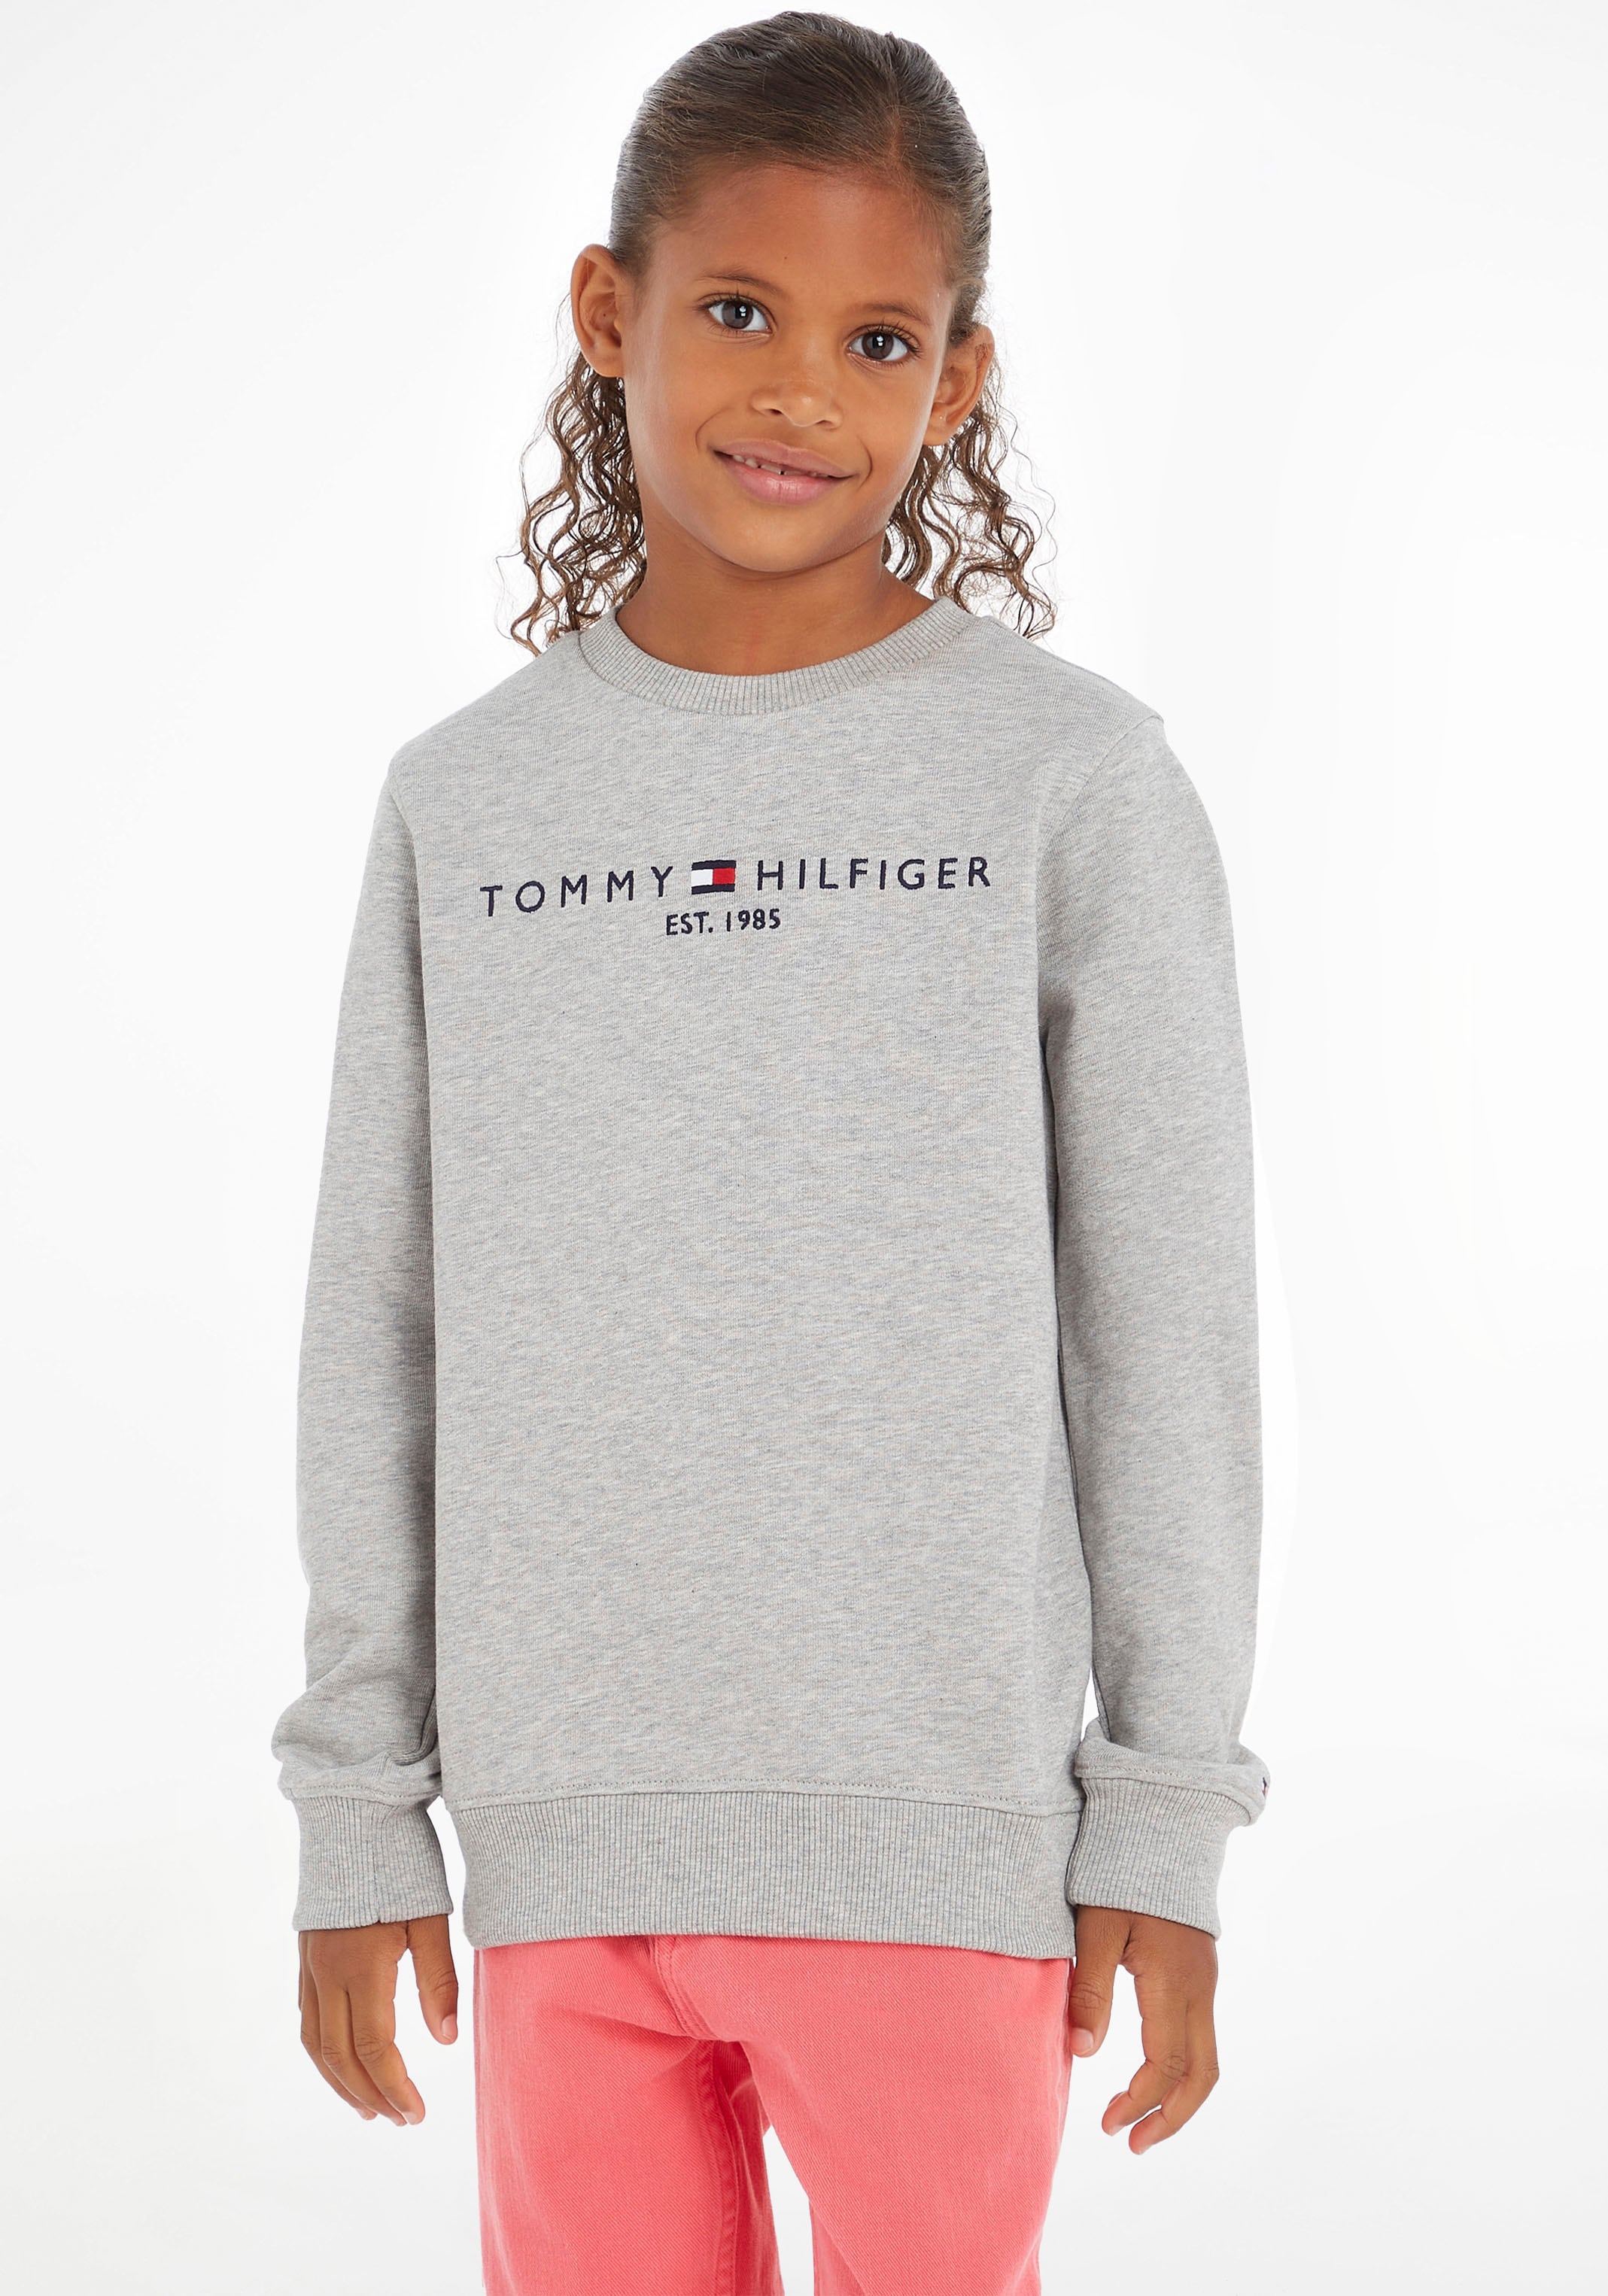 Kinder Junior ♕ MiniMe,für »ESSENTIAL Sweatshirt und bei Kids SWEATSHIRT«, Jungen Mädchen Tommy Hilfiger